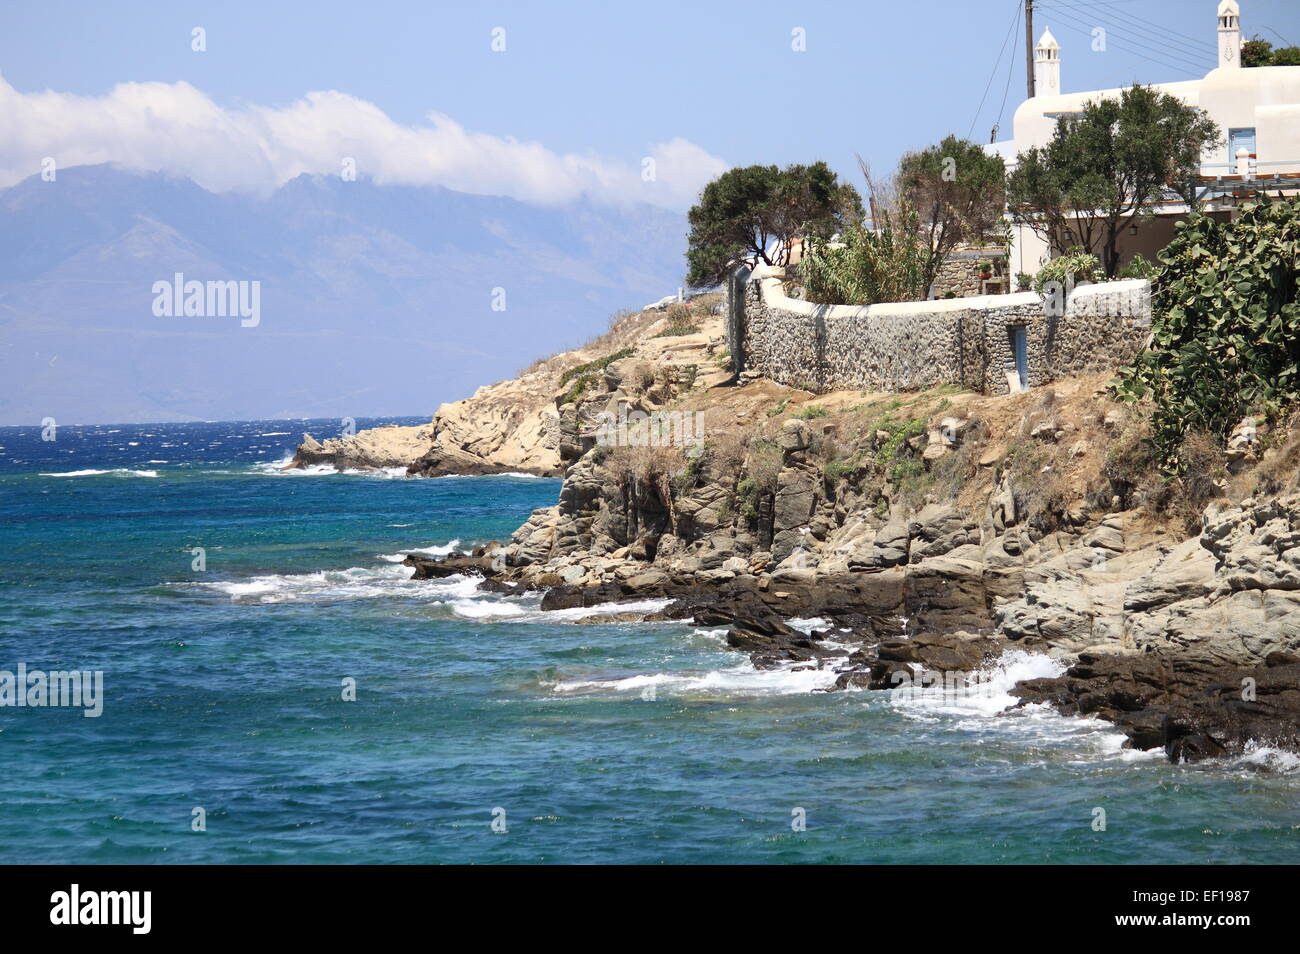 Paesaggio marino della Grecia con onde battendo contro una roccia Foto Stock